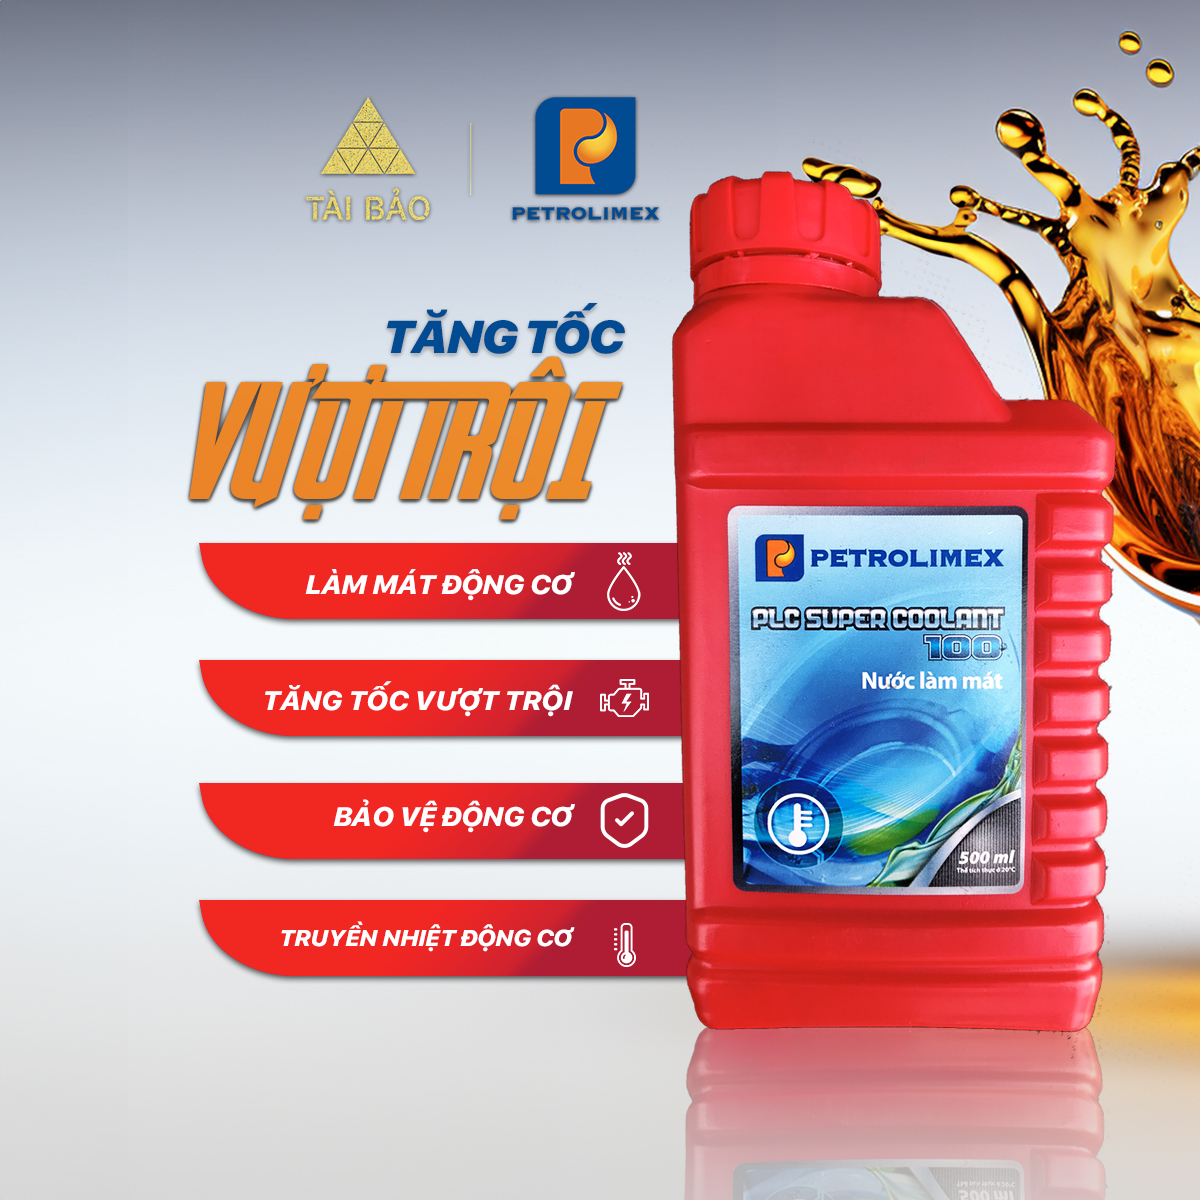 Nước làm mát Petrolimex PLC Super Coolant 100 - bình 500ml chính hãng